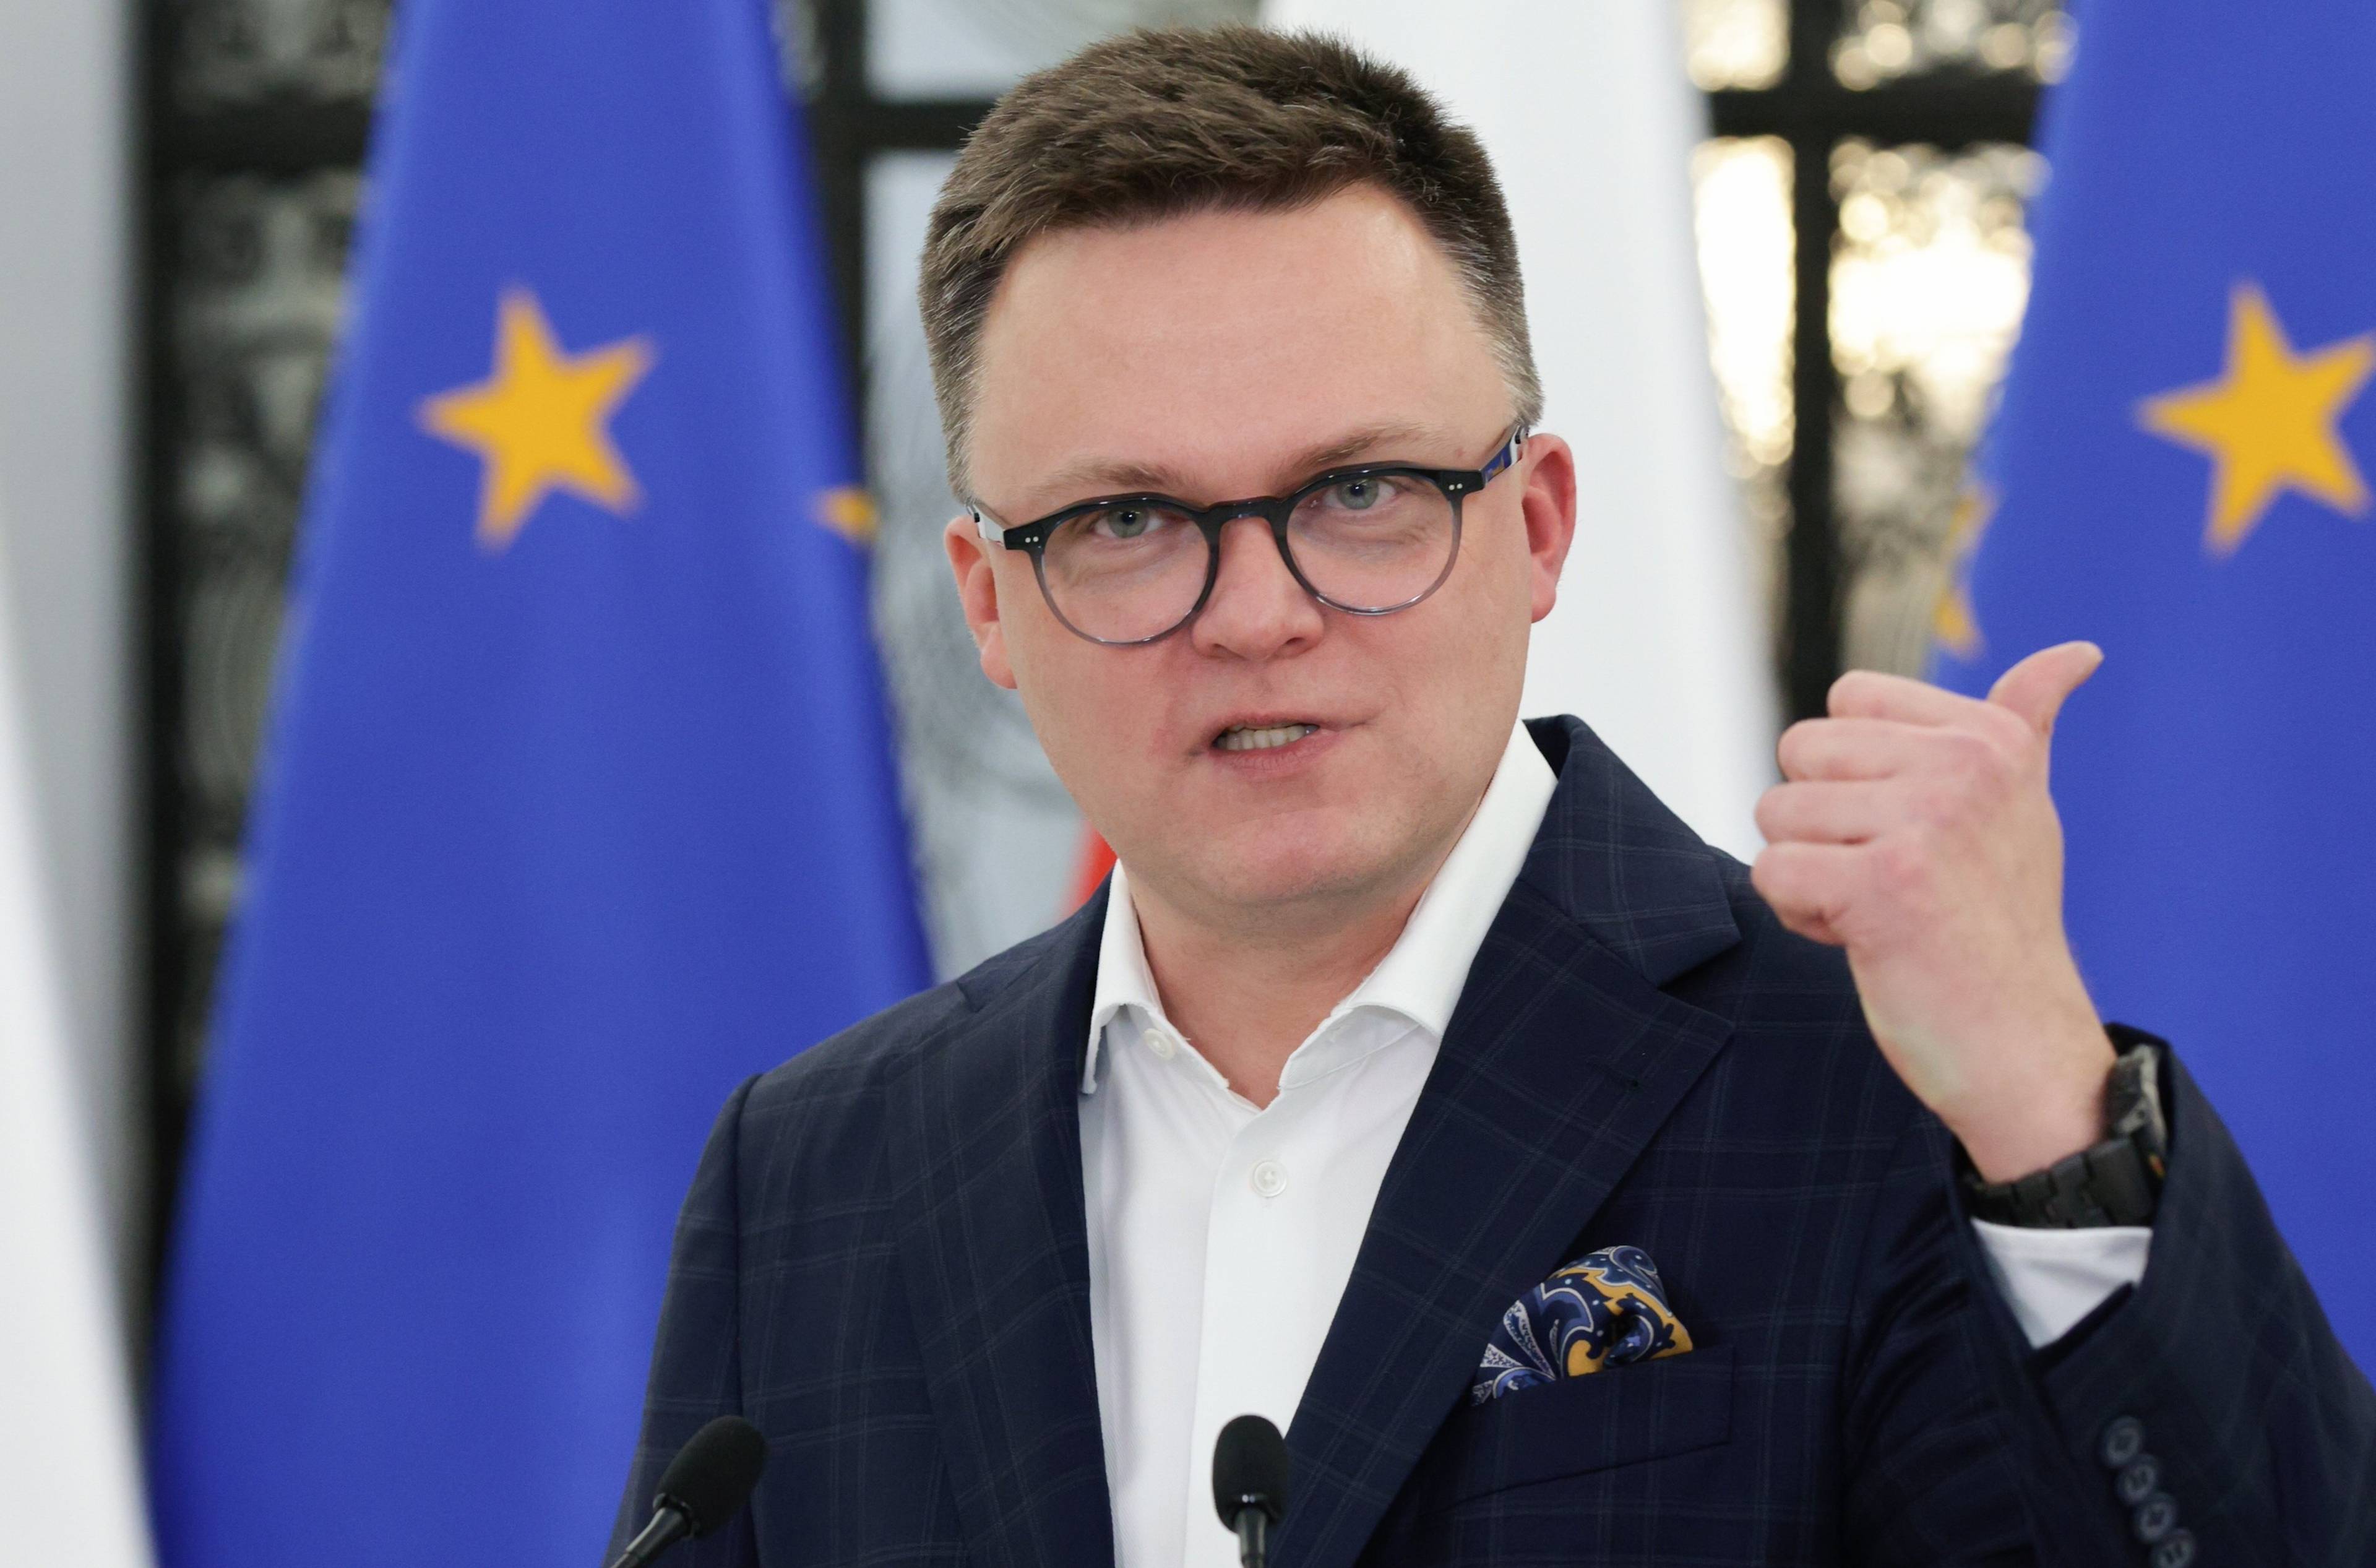 Ostrzyżony na jeża 40-latek w okularach, w garniturze bez krawata, na tle flag Polski i UE